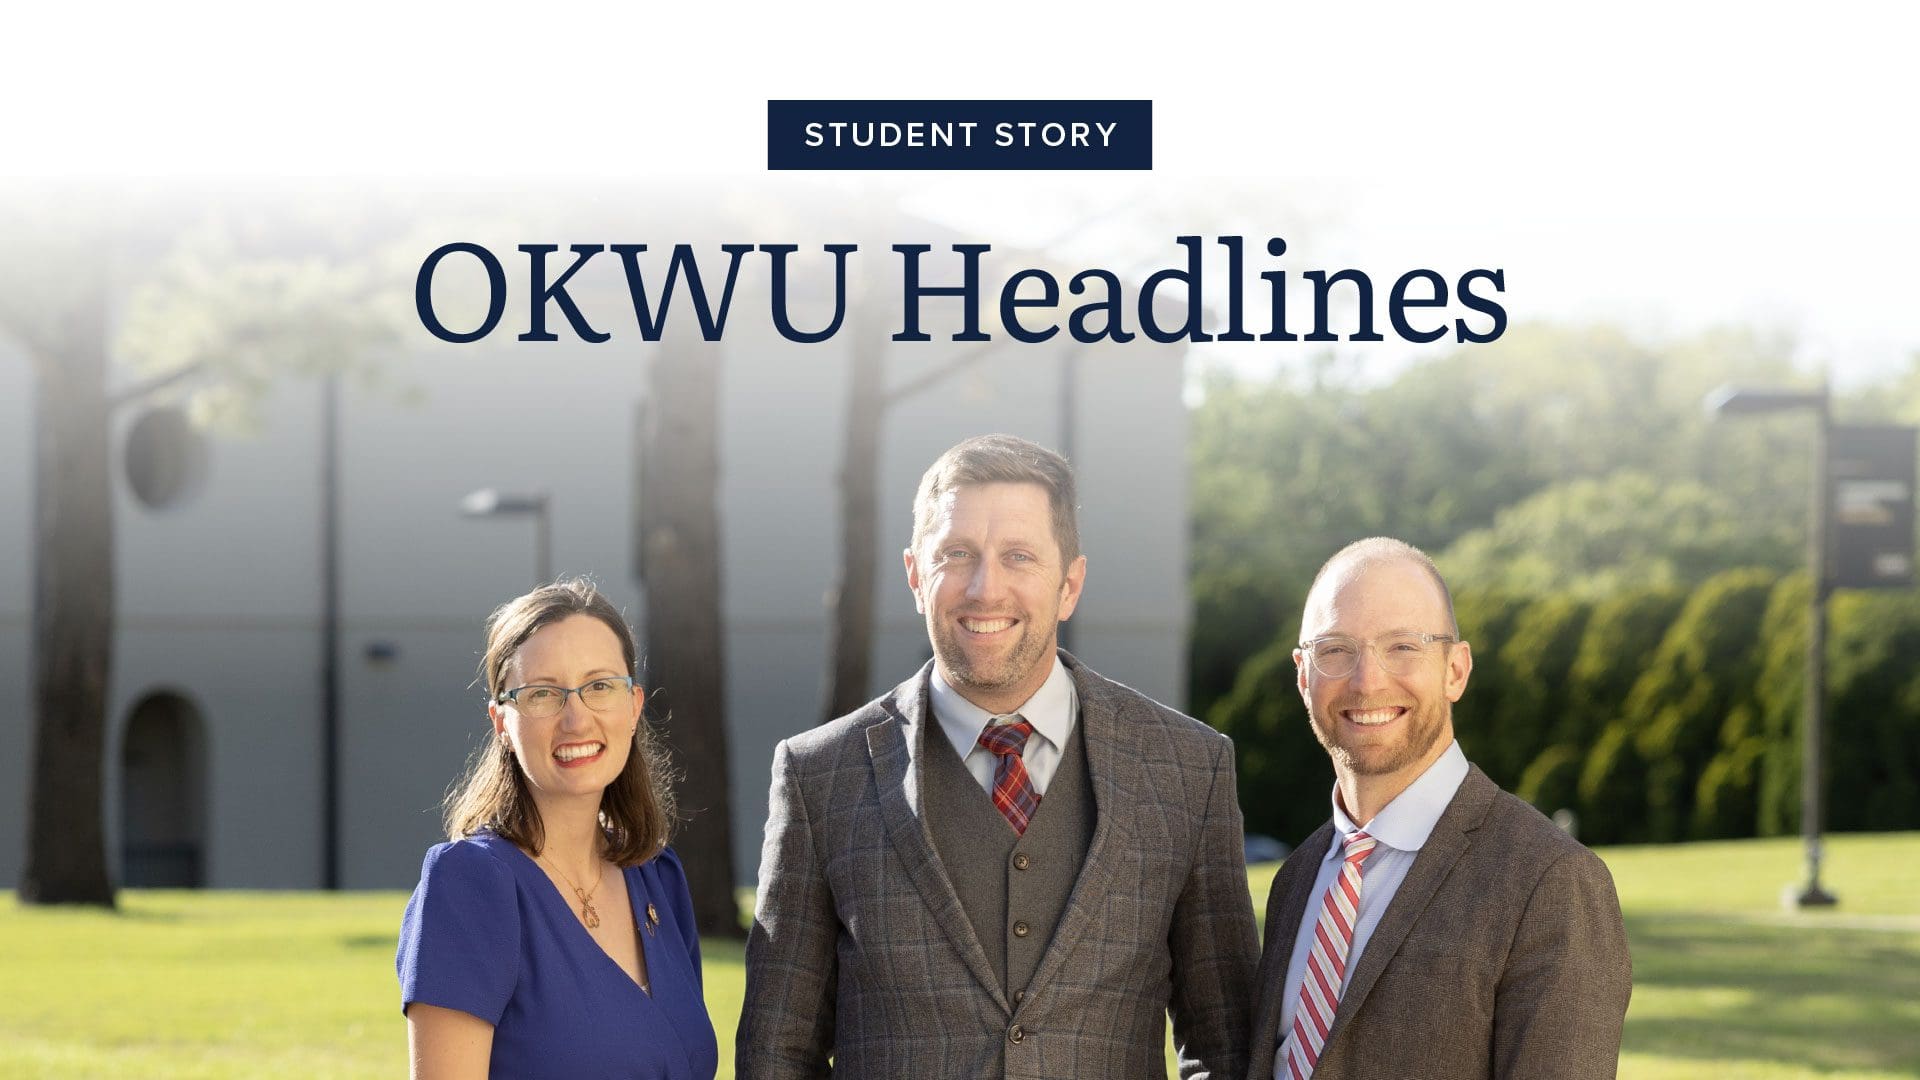 OKWU Headlines